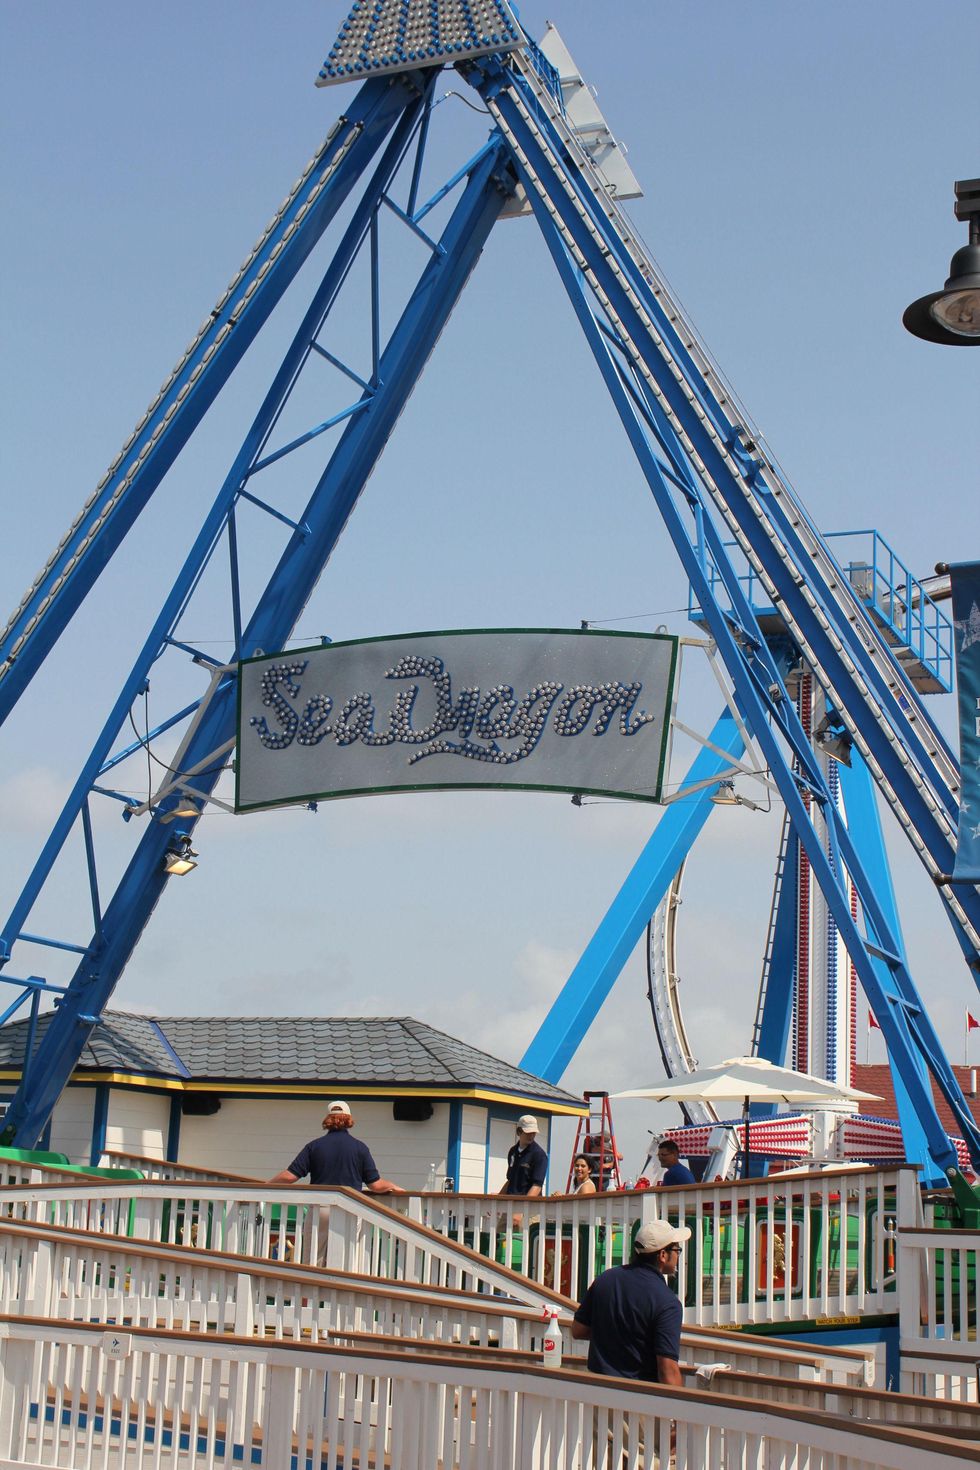 News_Galveston Pleasure Pier_Sea Dragon Ride_May 2012